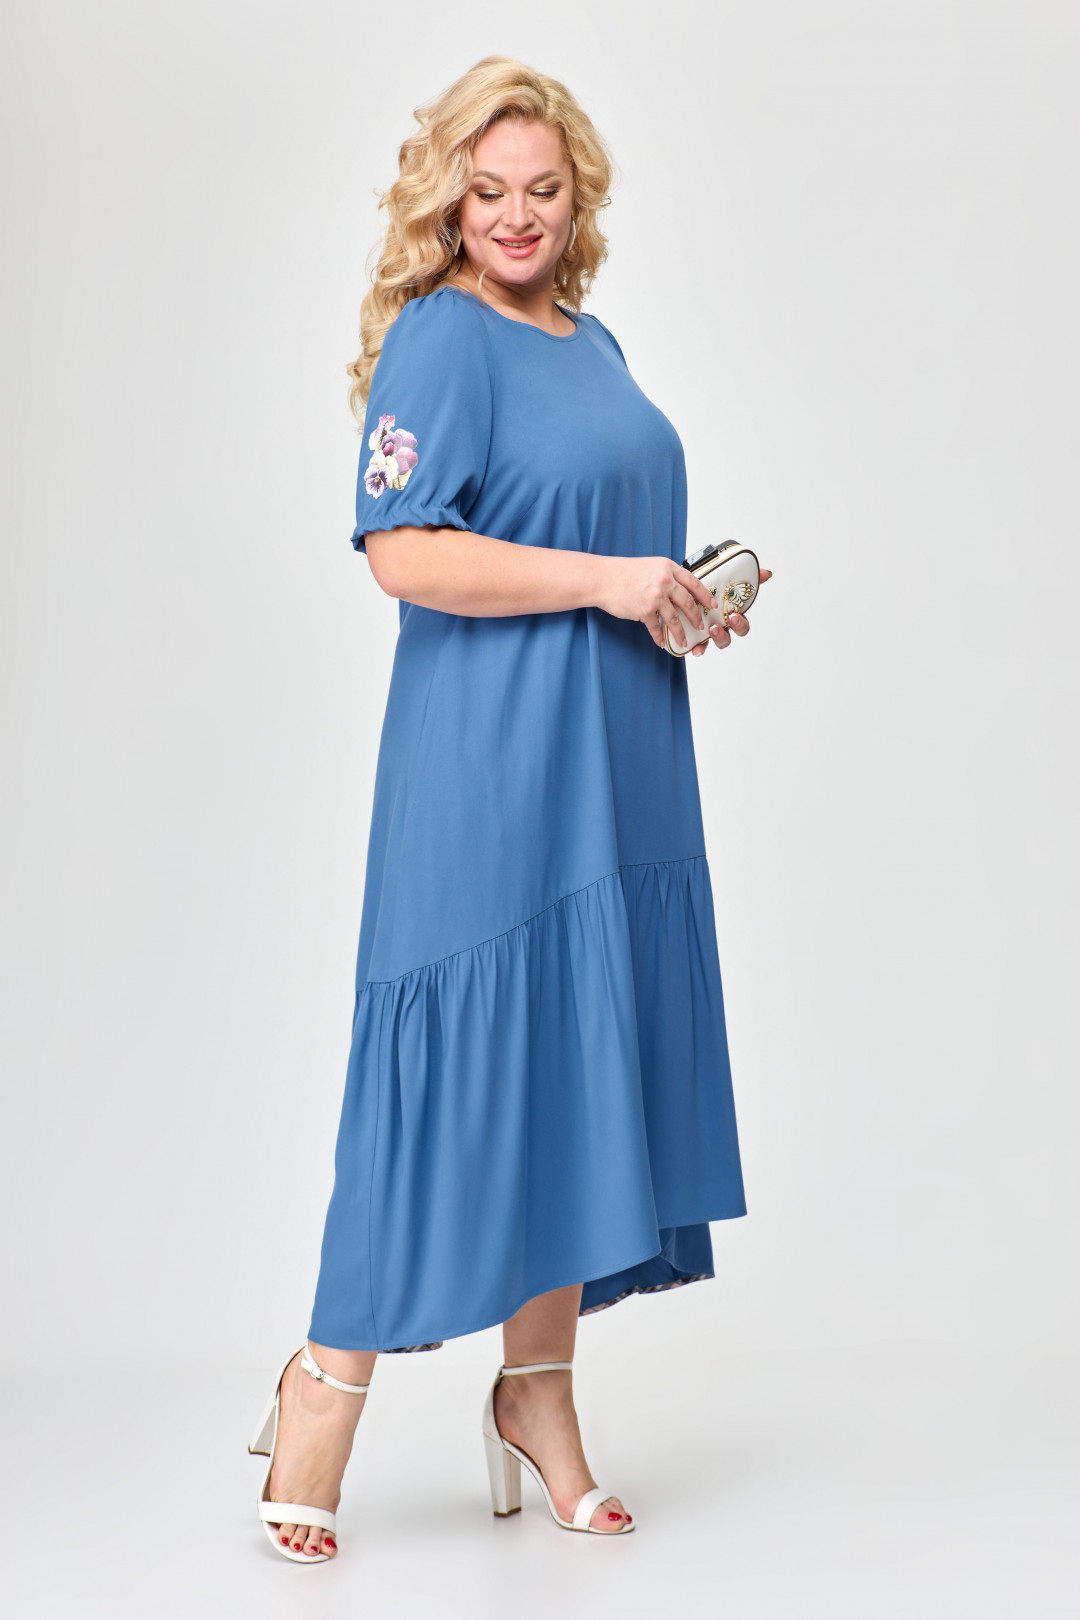 Платье ALGRANDA (Новелла Шарм) A3730-4-4-с